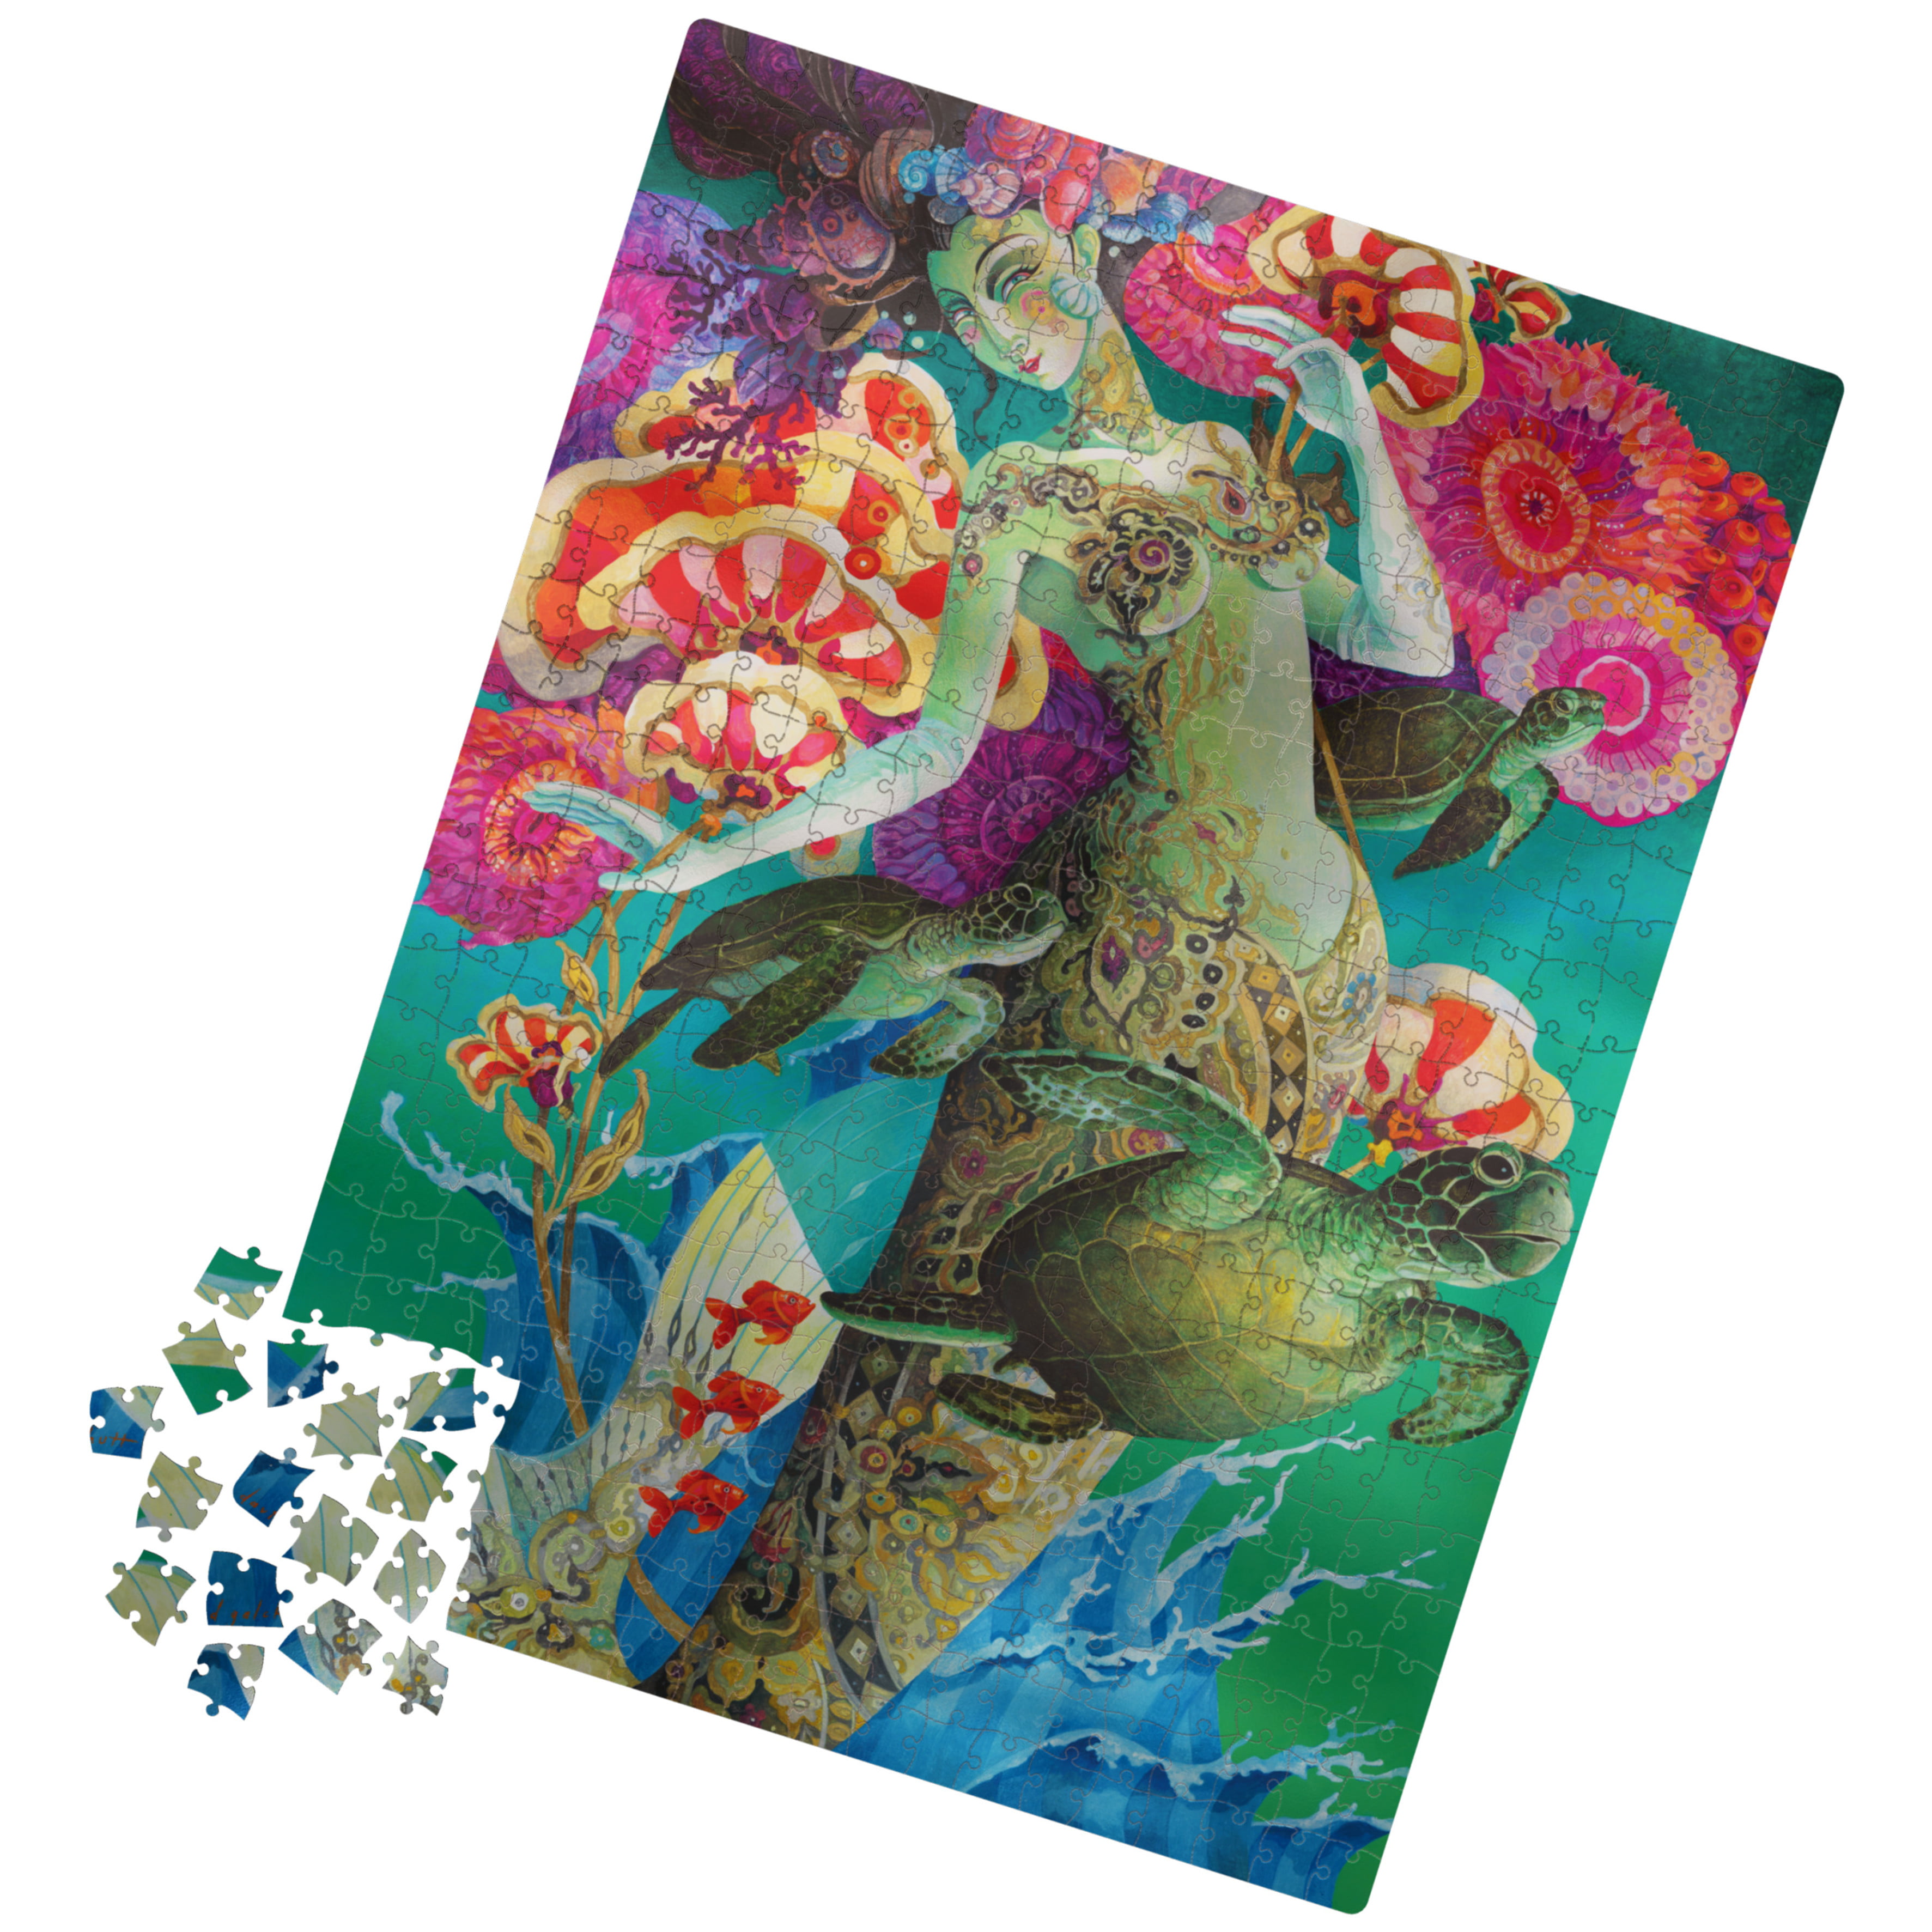 Sea Sun Stars 500 Piece Foil Jigsaw Puzzle 18 X 24 Milton Bradley Colorful  for sale online